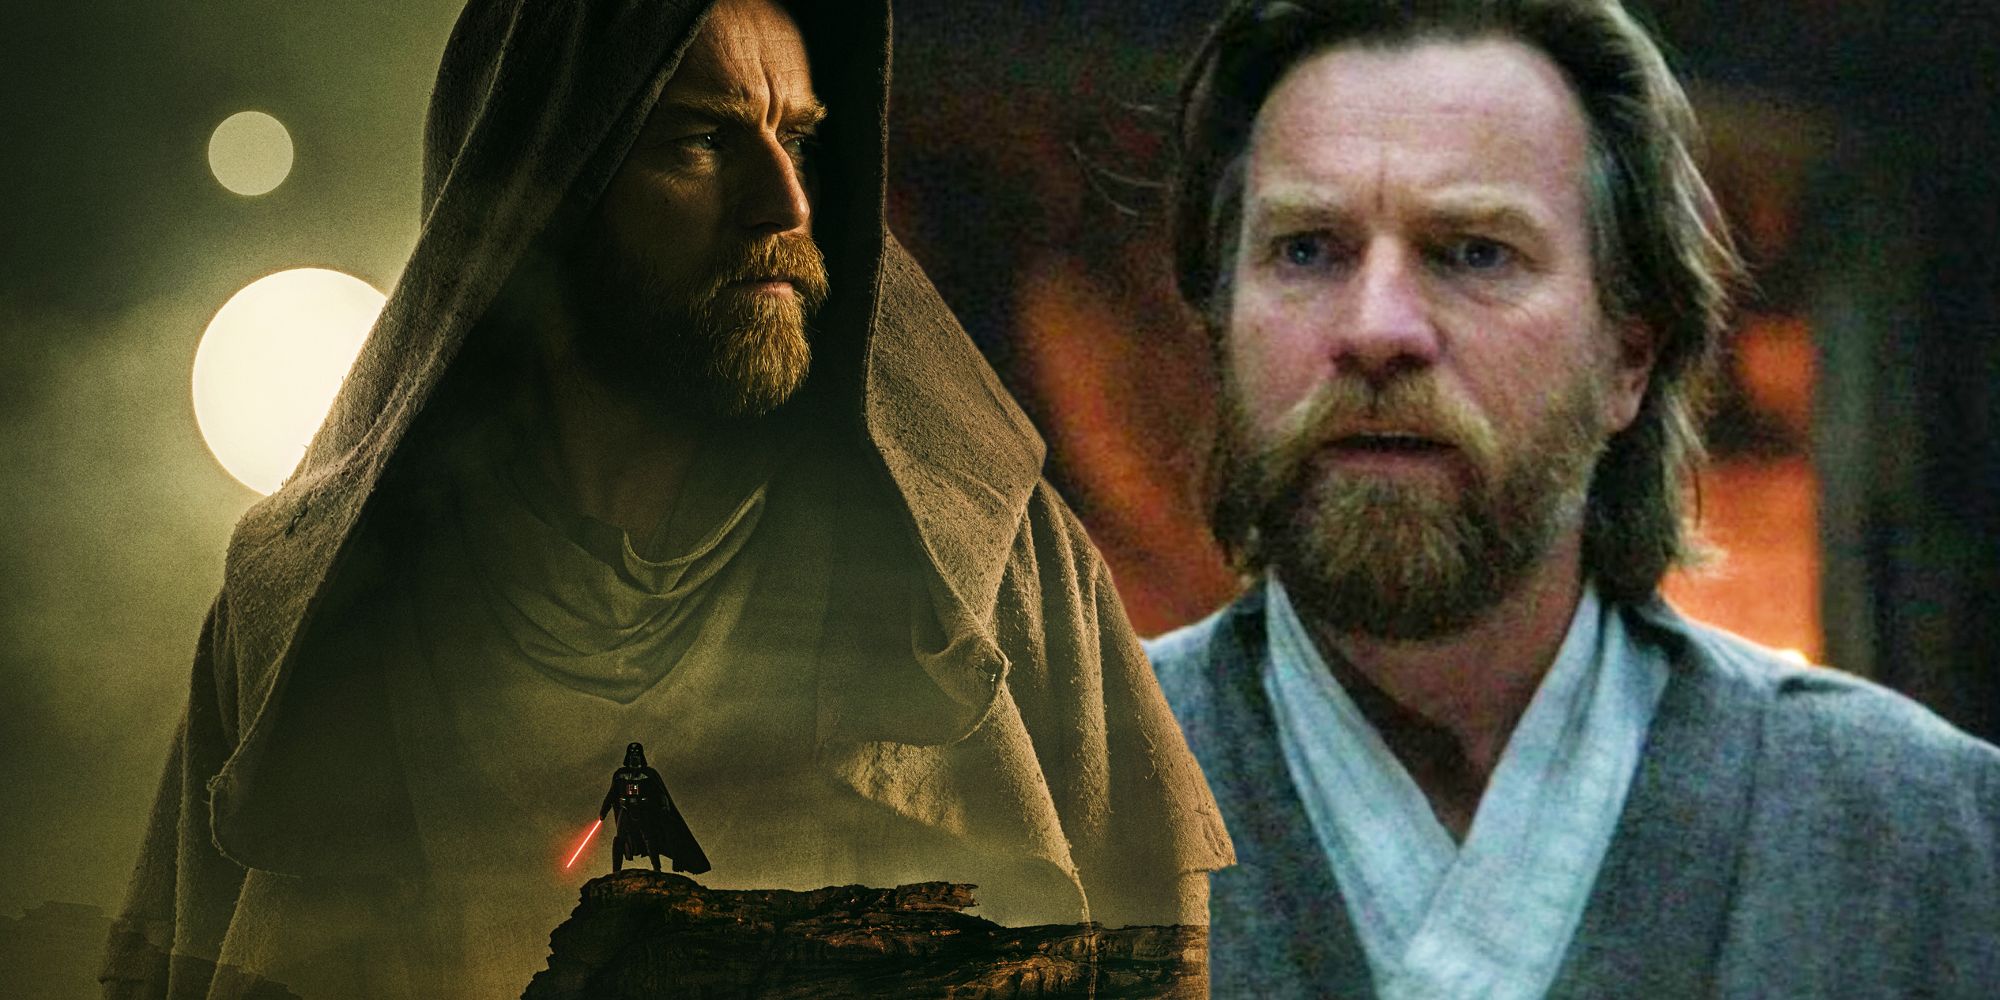 "Hay otros 10 años con muchas historias": el director de Obi-Wan Kenobi sobre las ideas de Ewan McGregor para la temporada 2